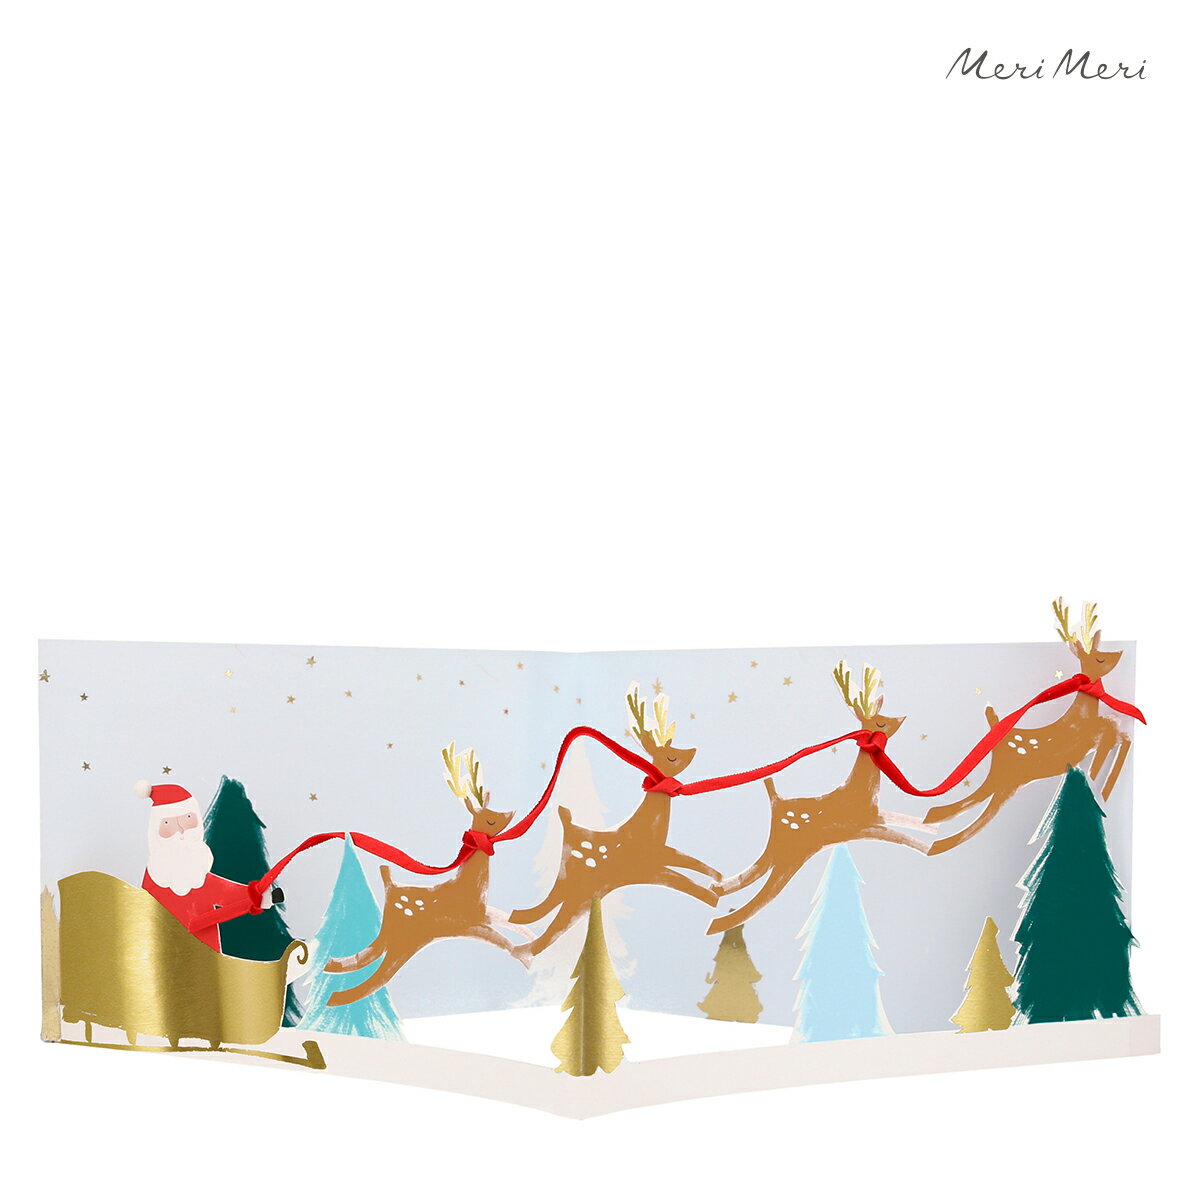 【クリスマス】クリスマスカード サンタ 立体 おしゃれ かわいい グリーティングカード 輸入カード メッセージカード merimeri メリメリ Santa 039 s Sleigh 3d Scene Card